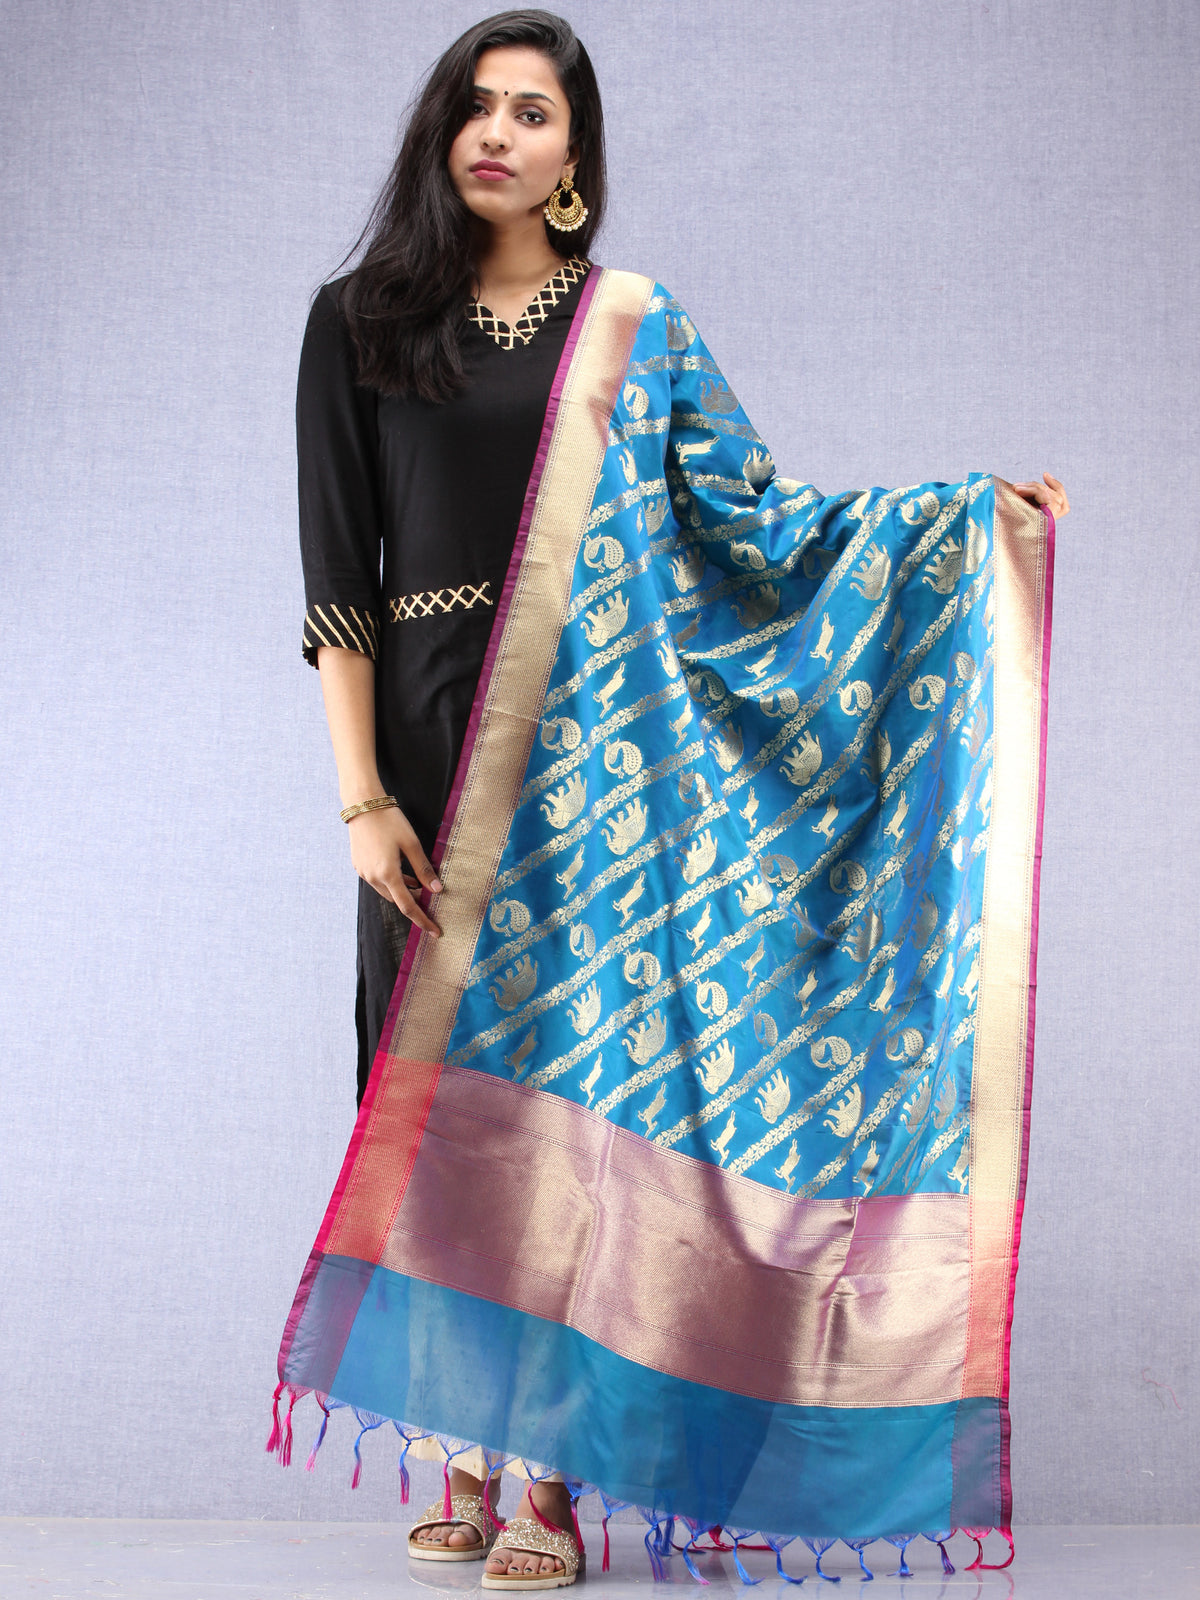 Banarasi Kanni Silk Dupatta With Zari Work - Blue Hot Pink & Gold - D04170875